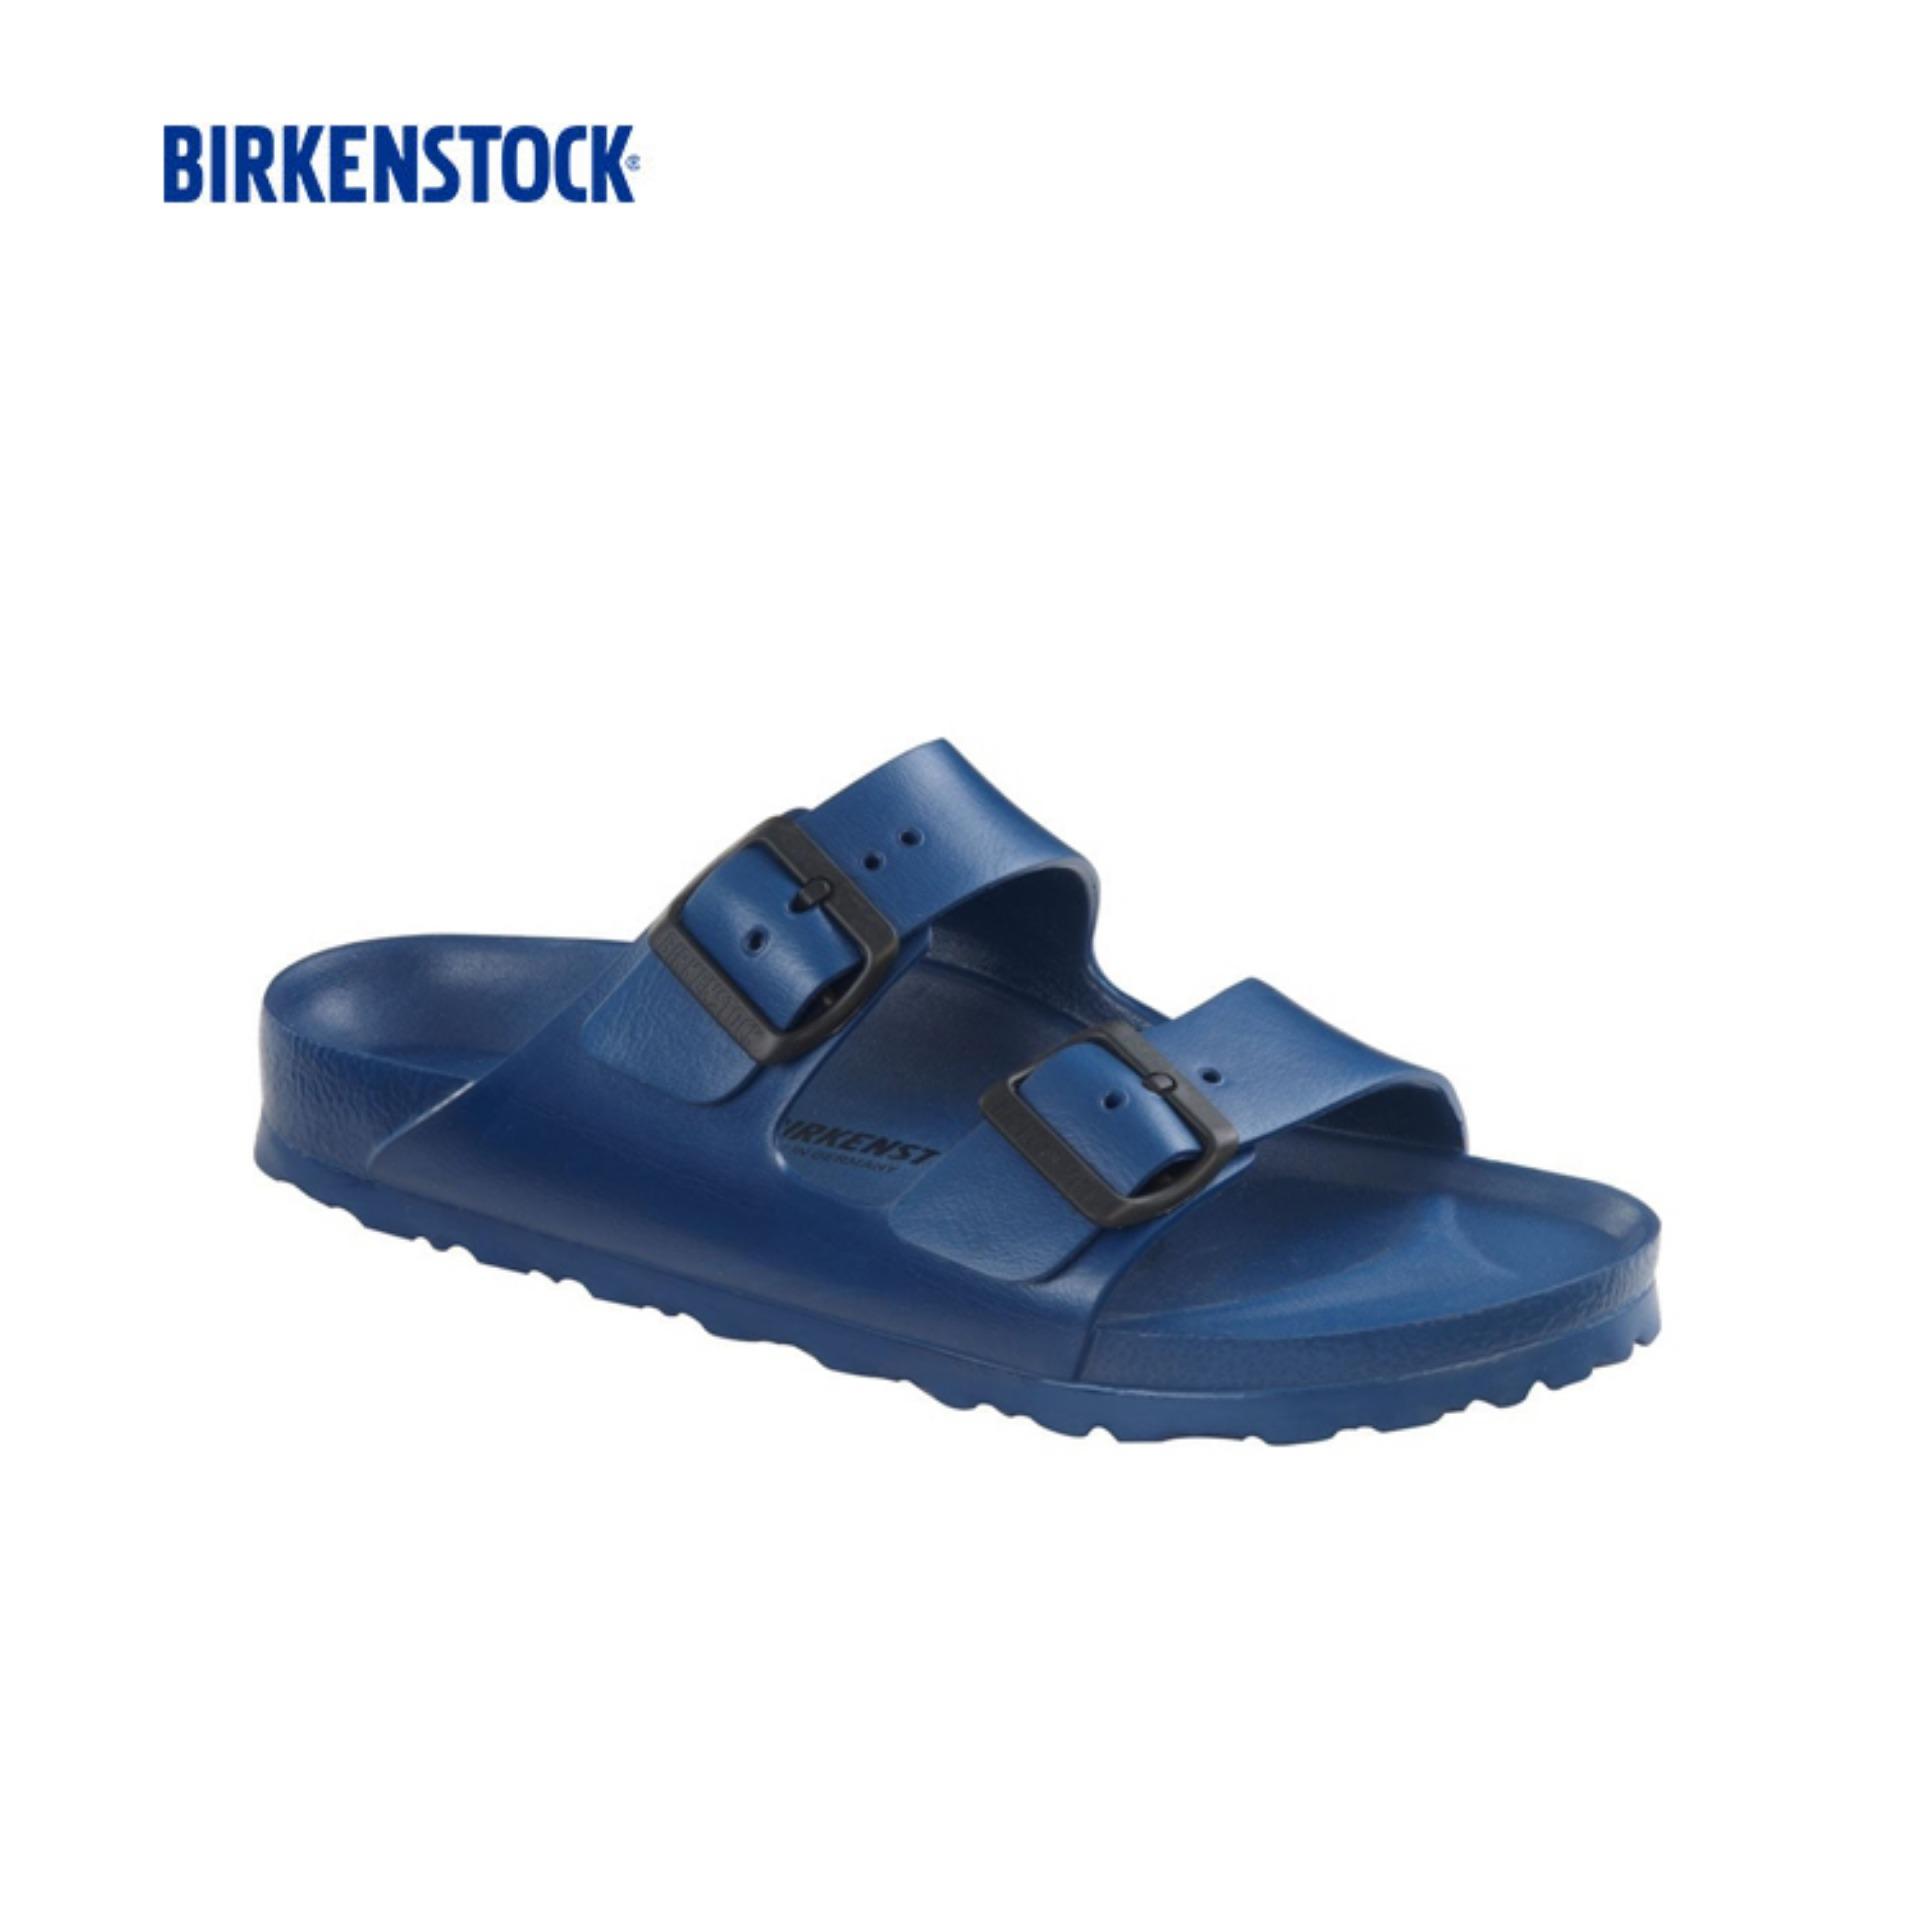 birkenstock wedge shoes